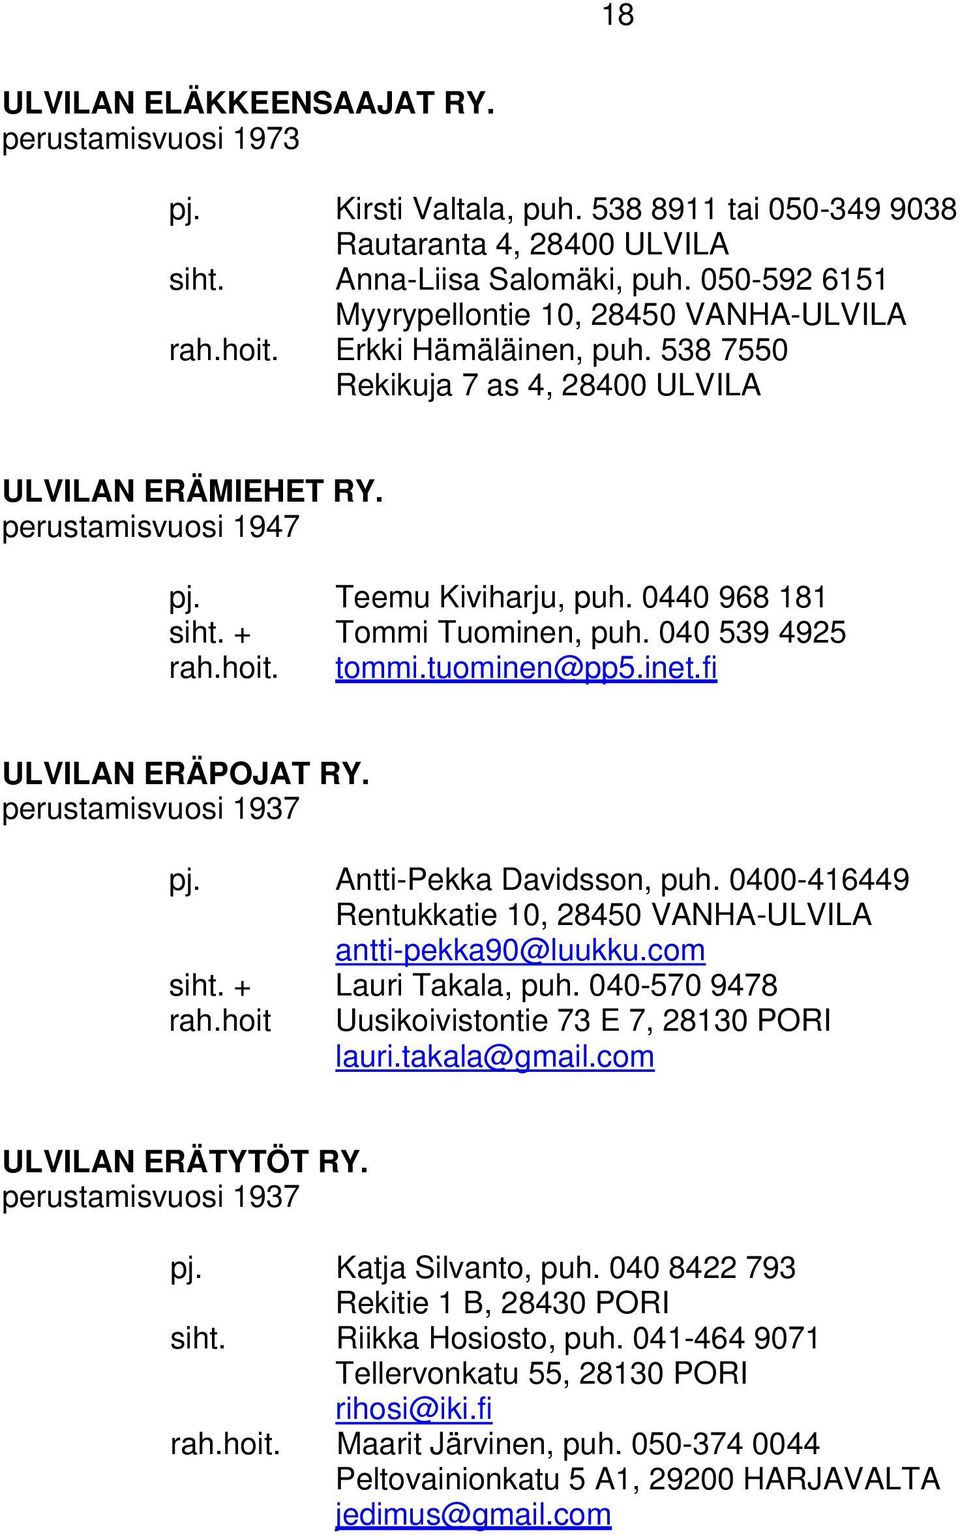 0440 968 181 siht. + Tommi Tuominen, puh. 040 539 4925 rah.hoit. tommi.tuominen@pp5.inet.fi ULVILAN ERÄPOJAT RY. perustamisvuosi 1937 pj. Antti-Pekka Davidsson, puh.